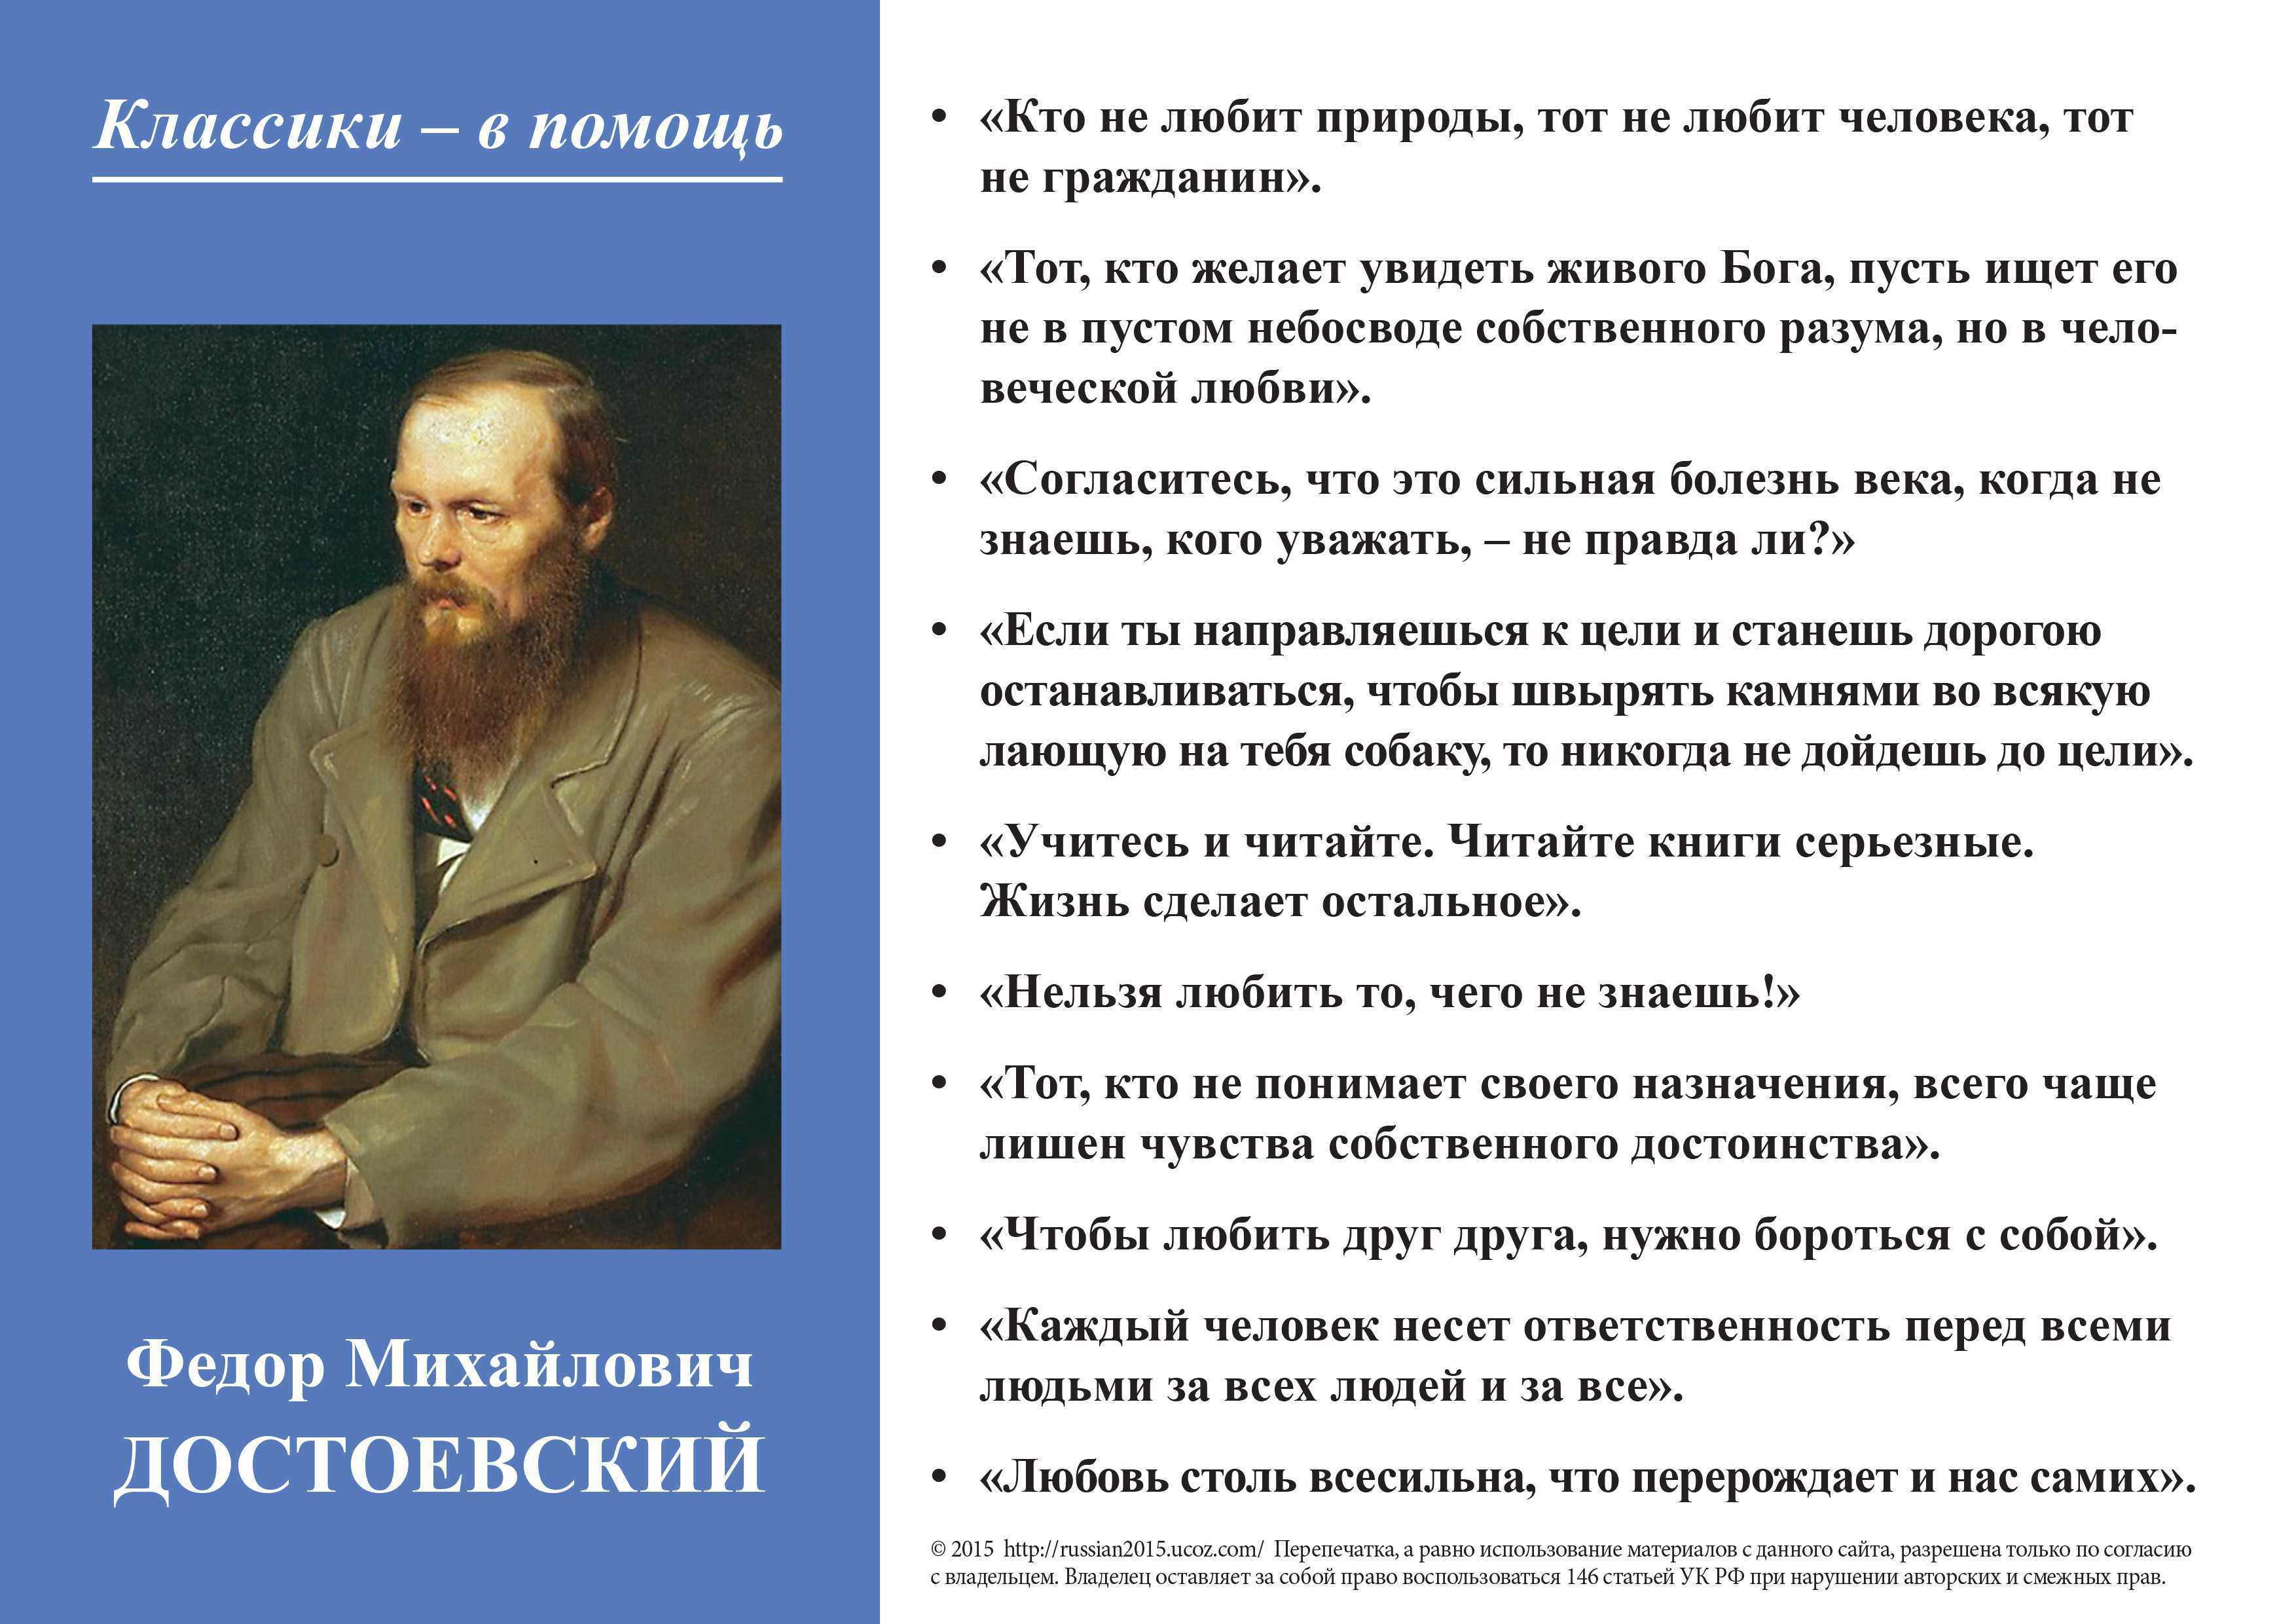 2 произведения достоевского